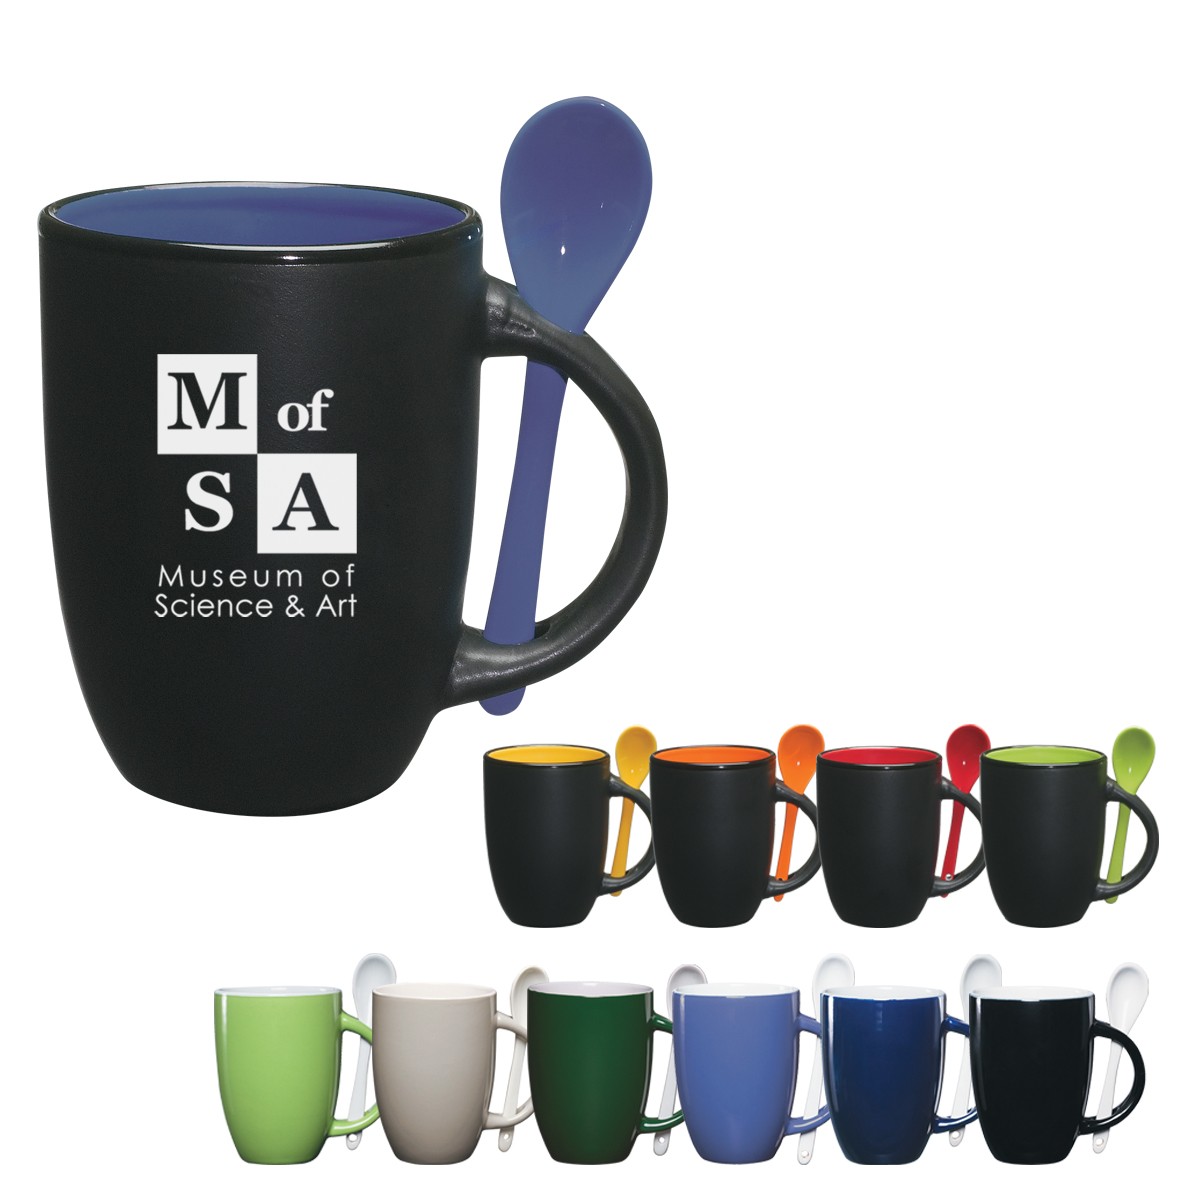 logo coffee mug